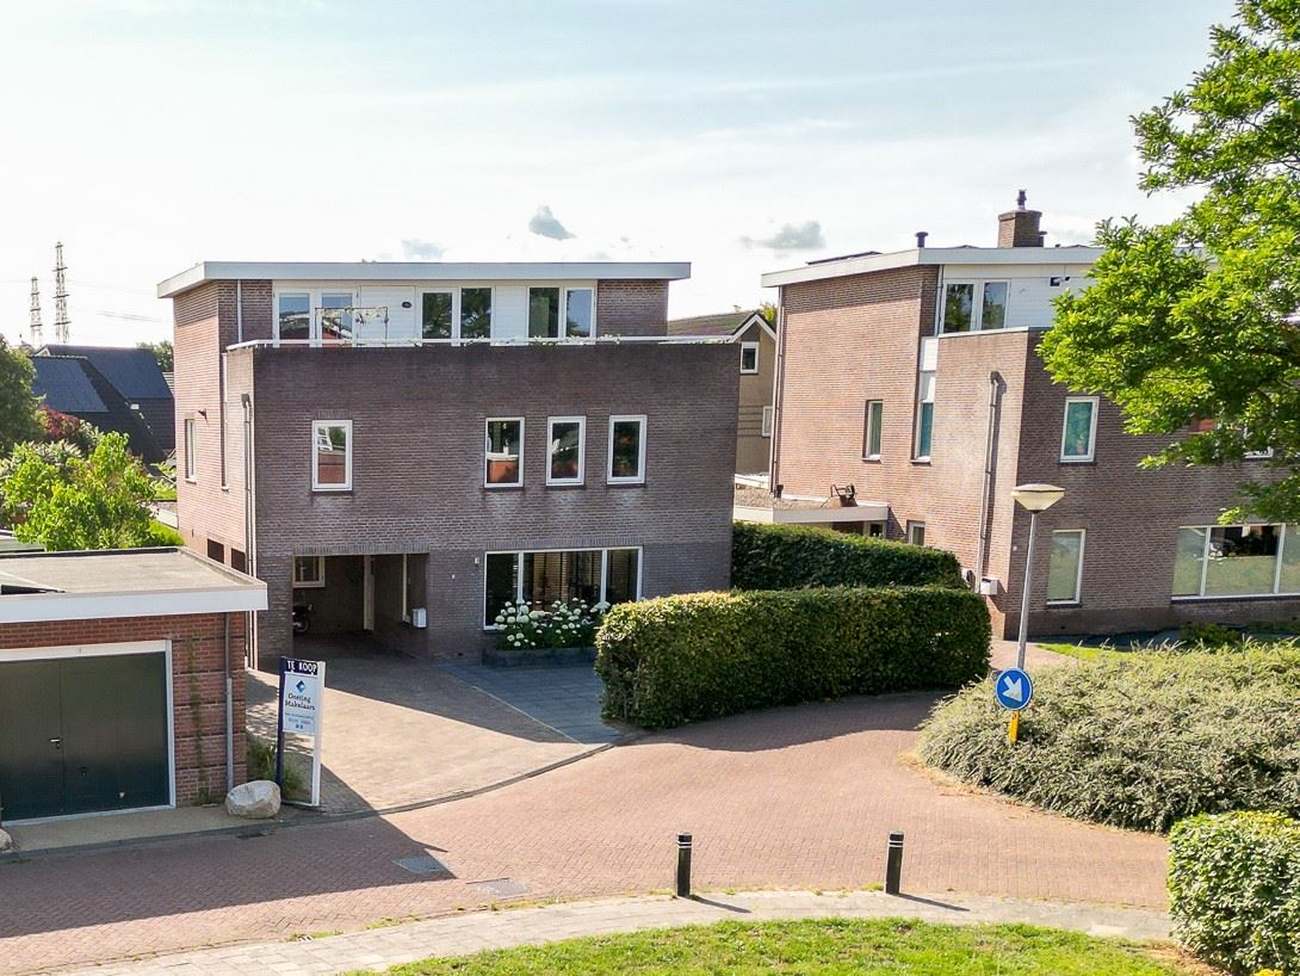 Te koop in Assen: ruime vrijstaande woning met 7 slaapkamers en eigen dakterras